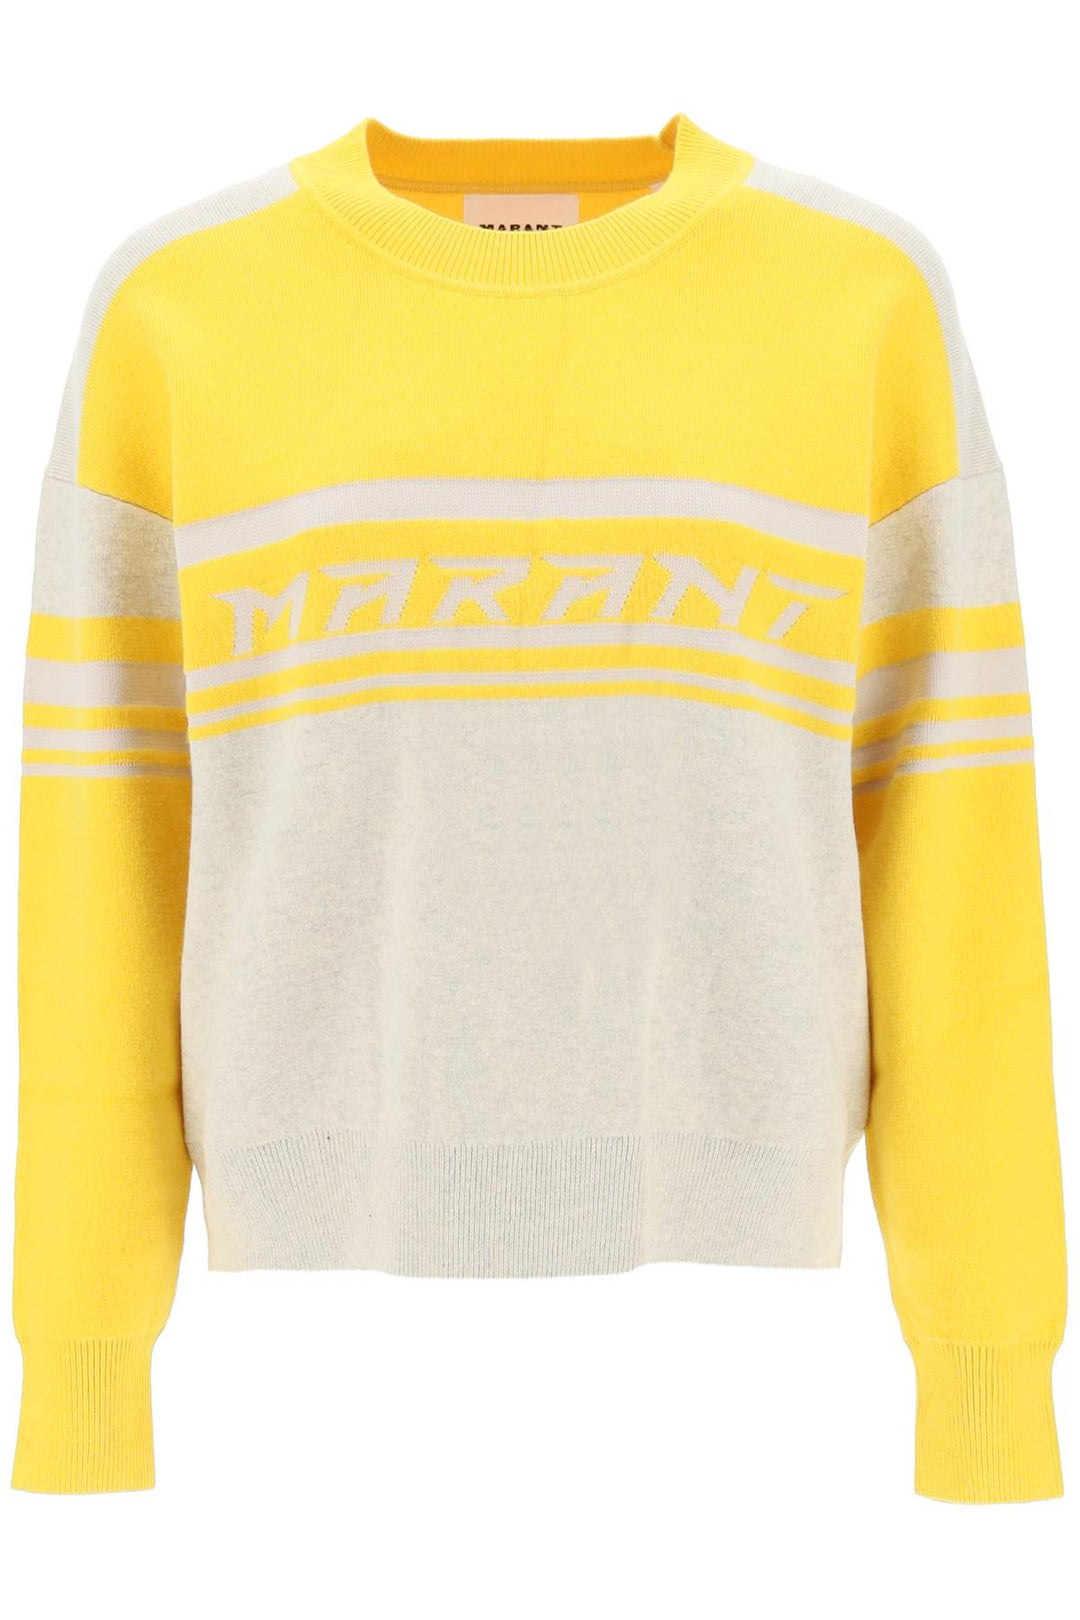 Isabel marant etoile 'callie' jacquard logo sweater-0